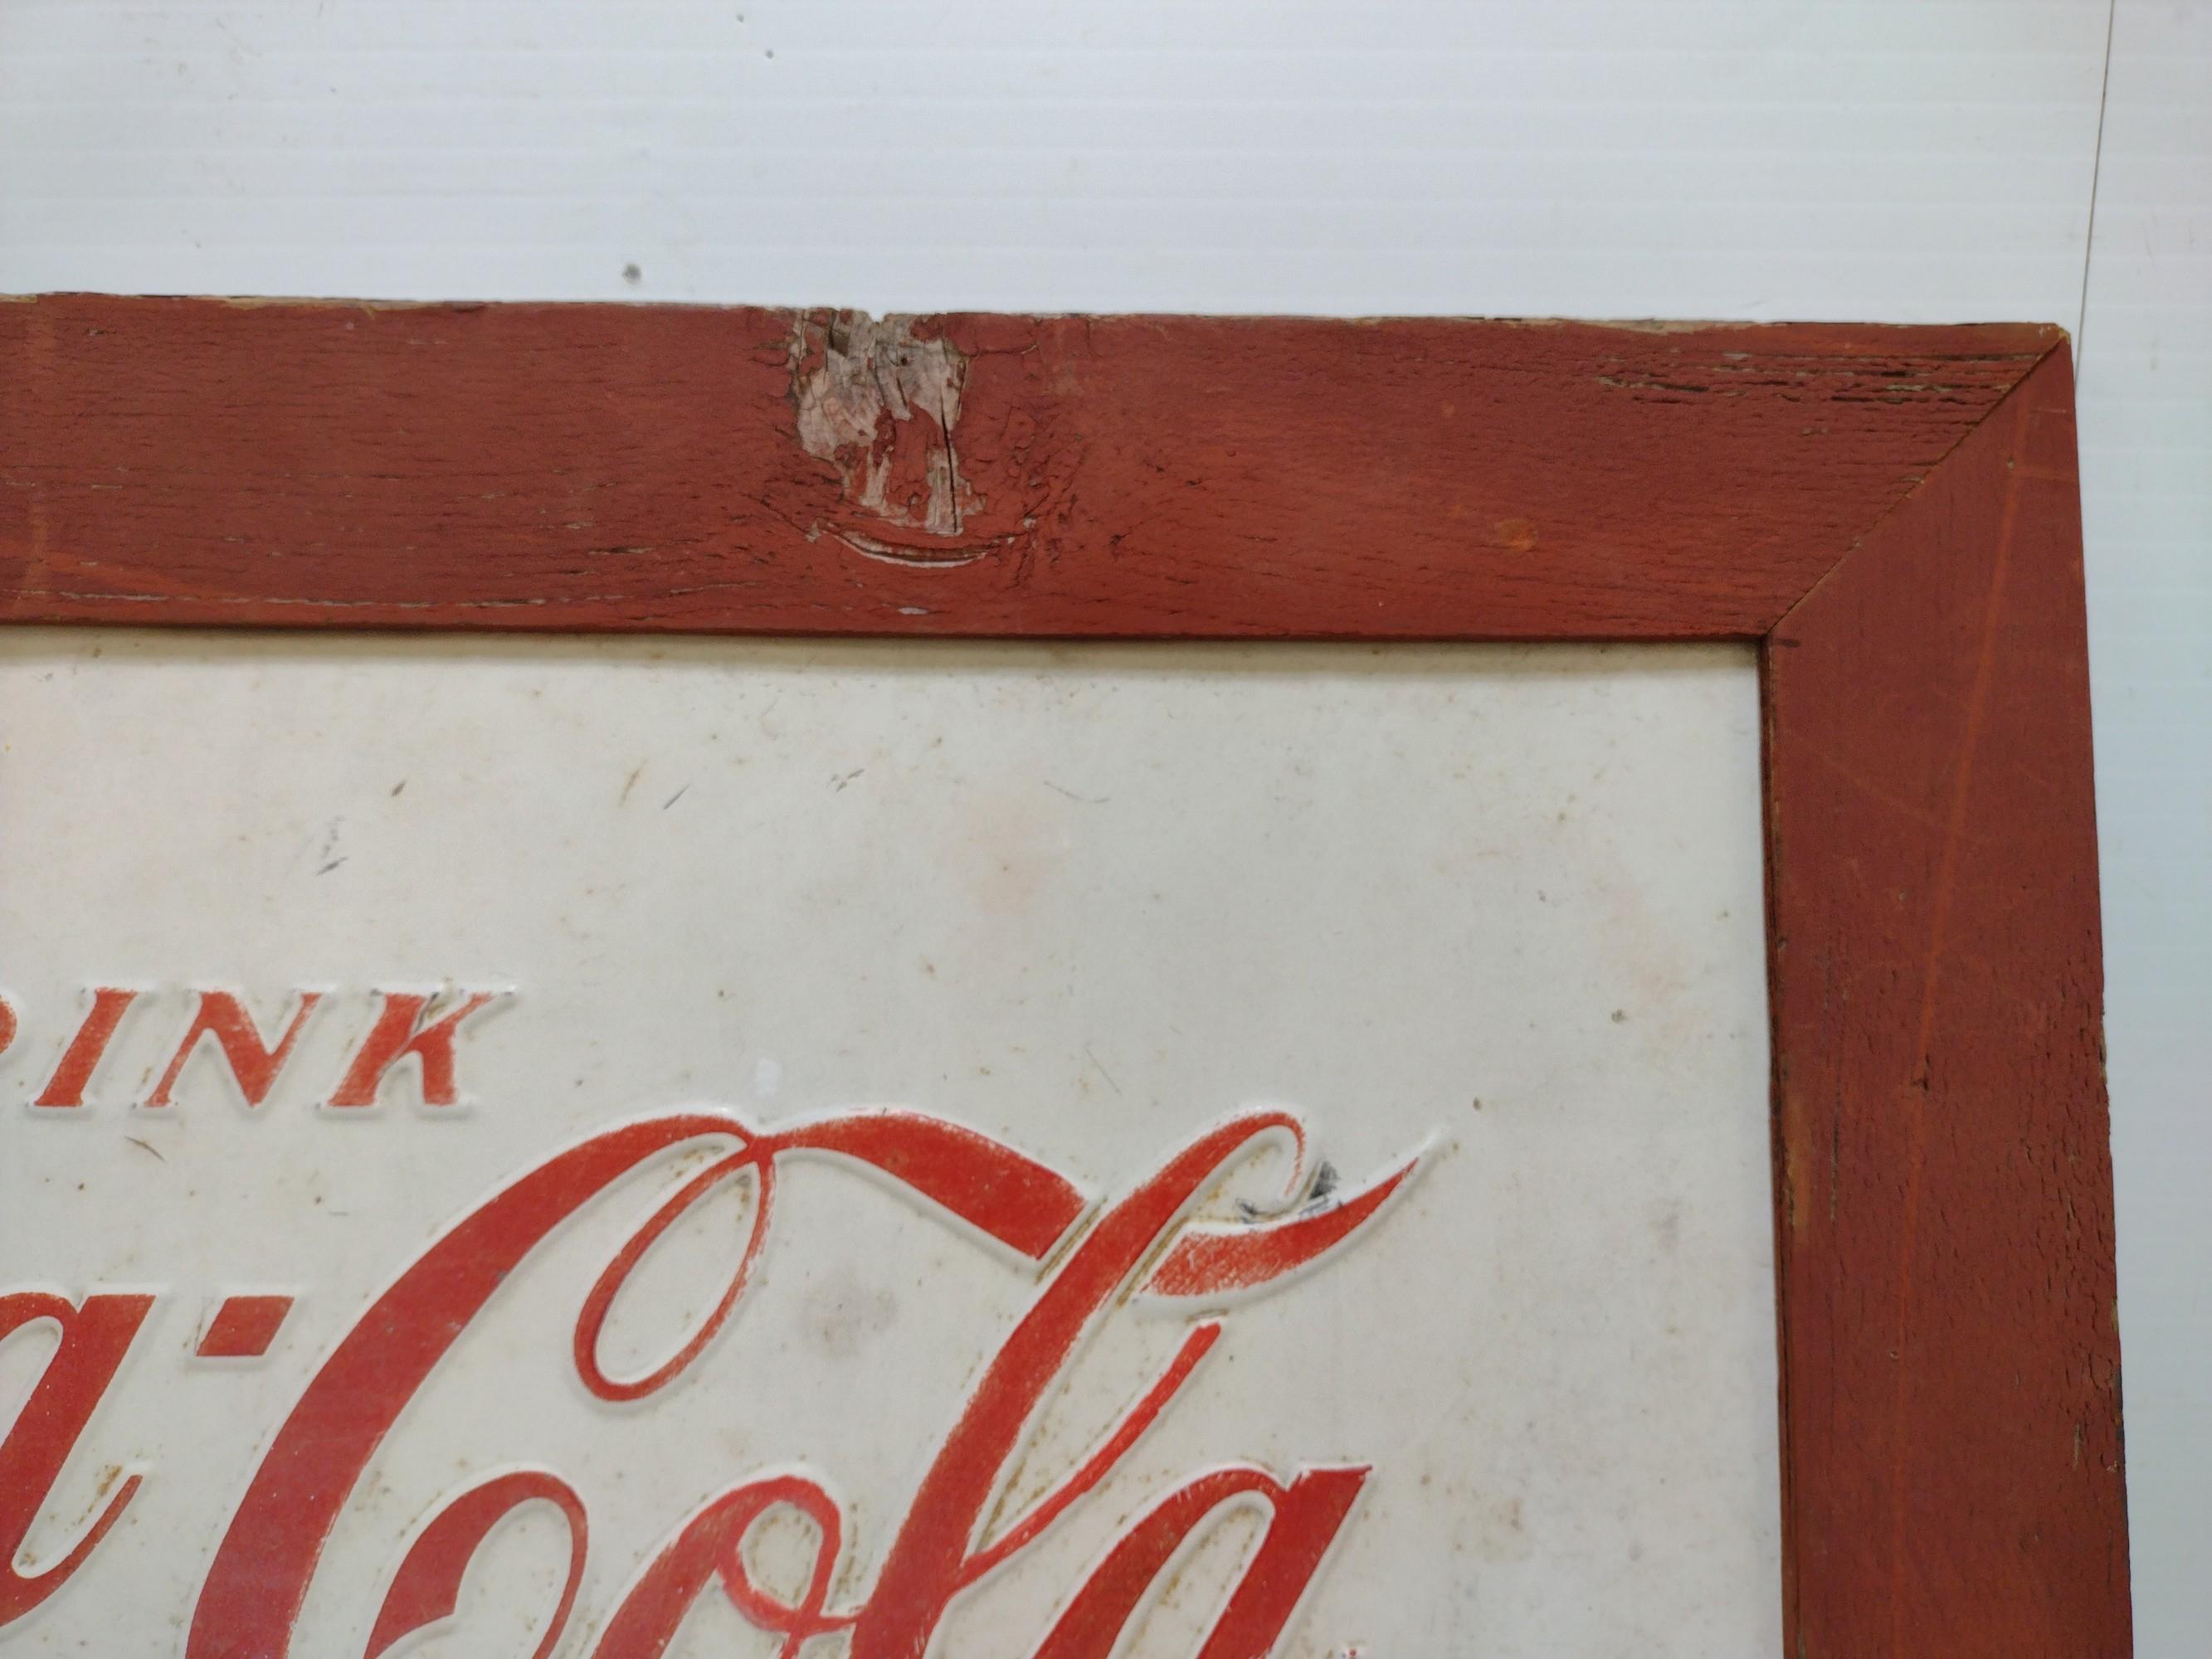 Vintage Embossed SSM Framed Coca-Cola Sign.